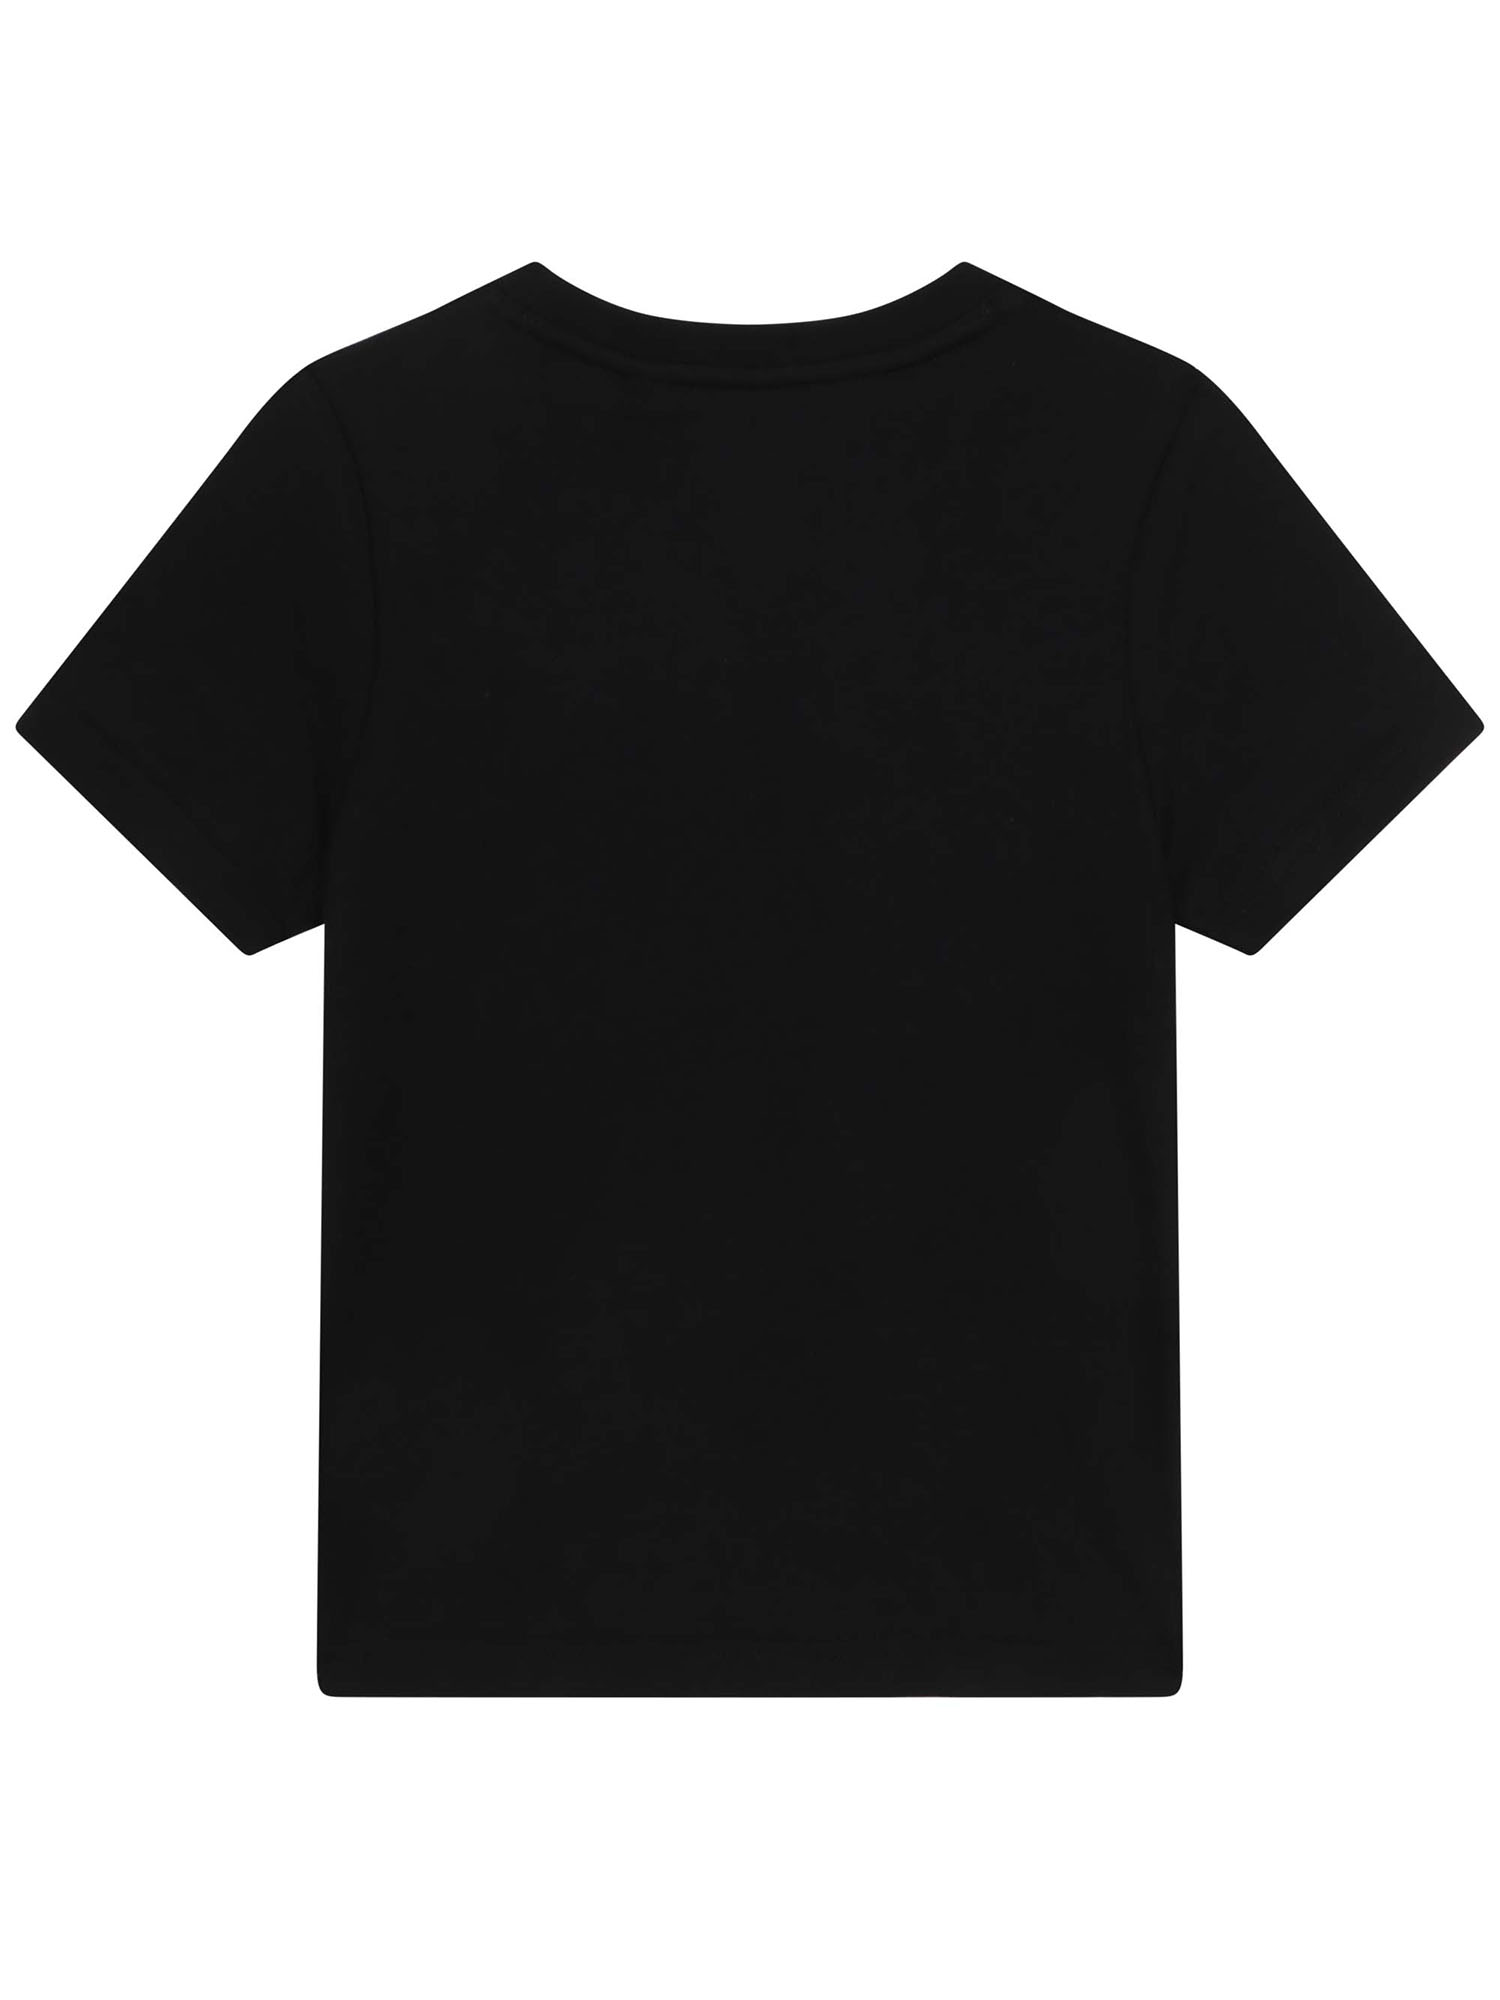 T-shirt chłopięcy Timberland T25S83/09B Czarny